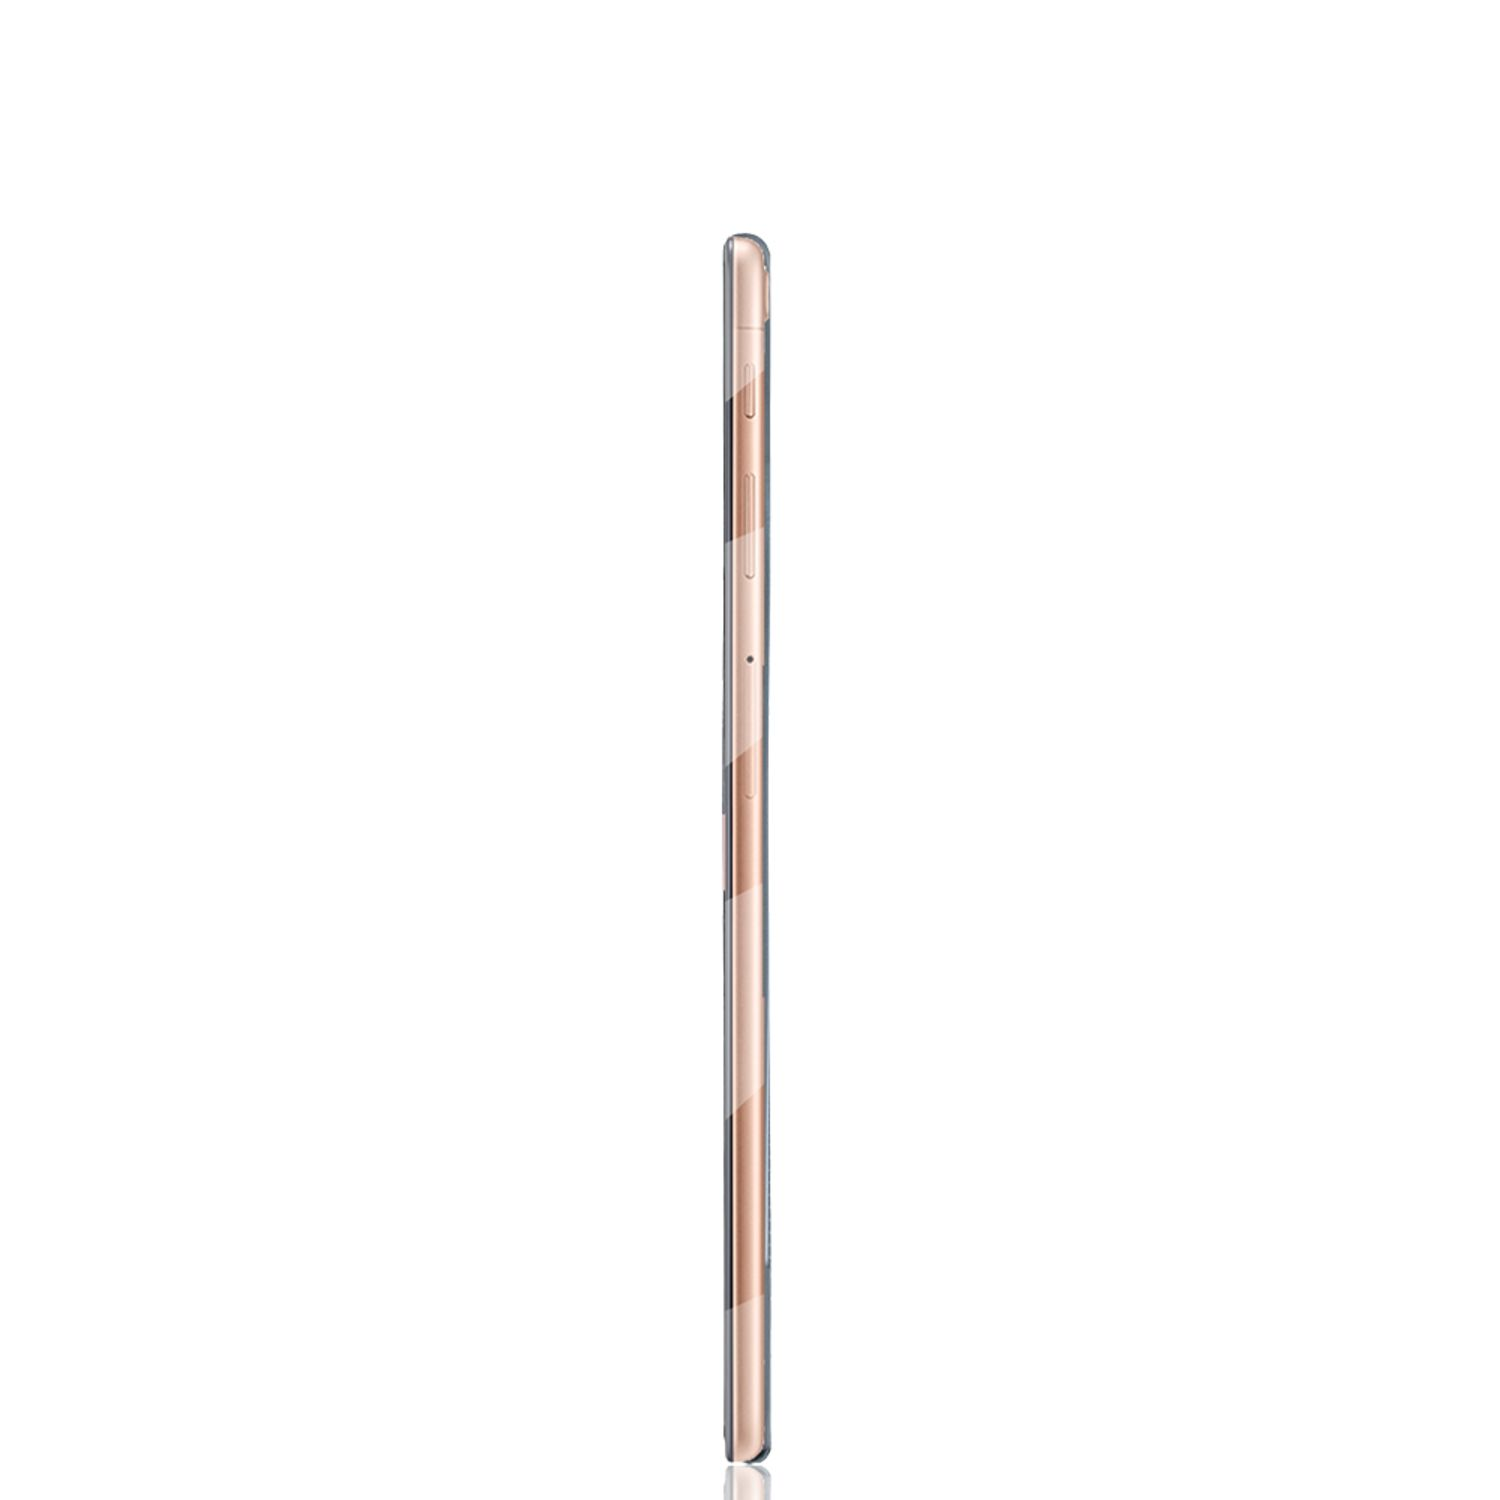 Transparent DESIGN Tablet Hülle für Kunststoff, KÖNIG Tablethülle Samsung Backcover